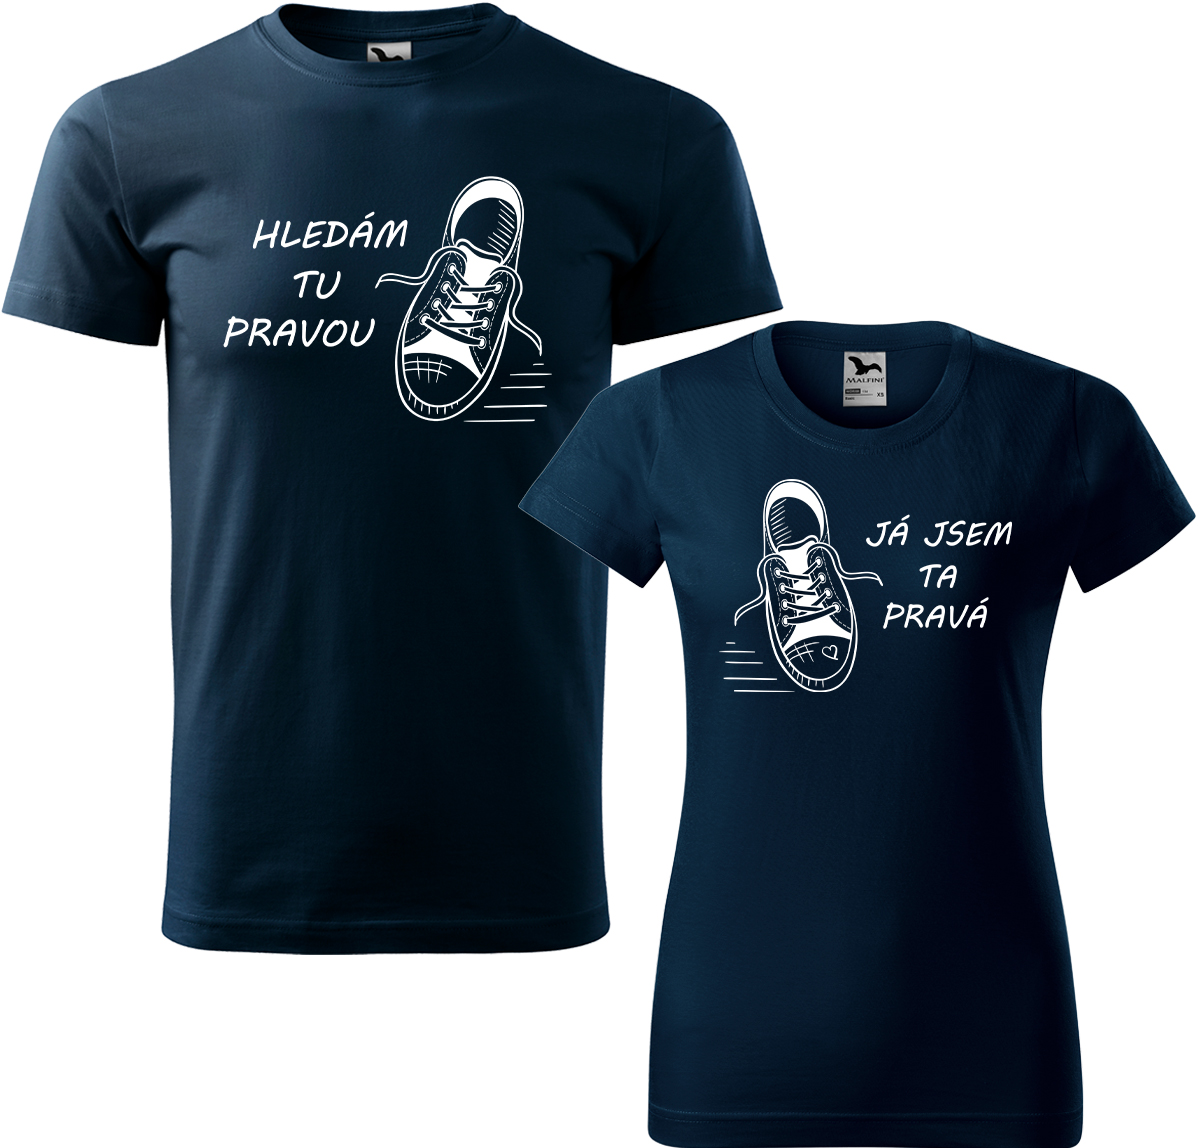 Trička pro páry - Kecky Barva: Námořní modrá (02), Velikost dámské tričko: S, Velikost pánské tričko: XL